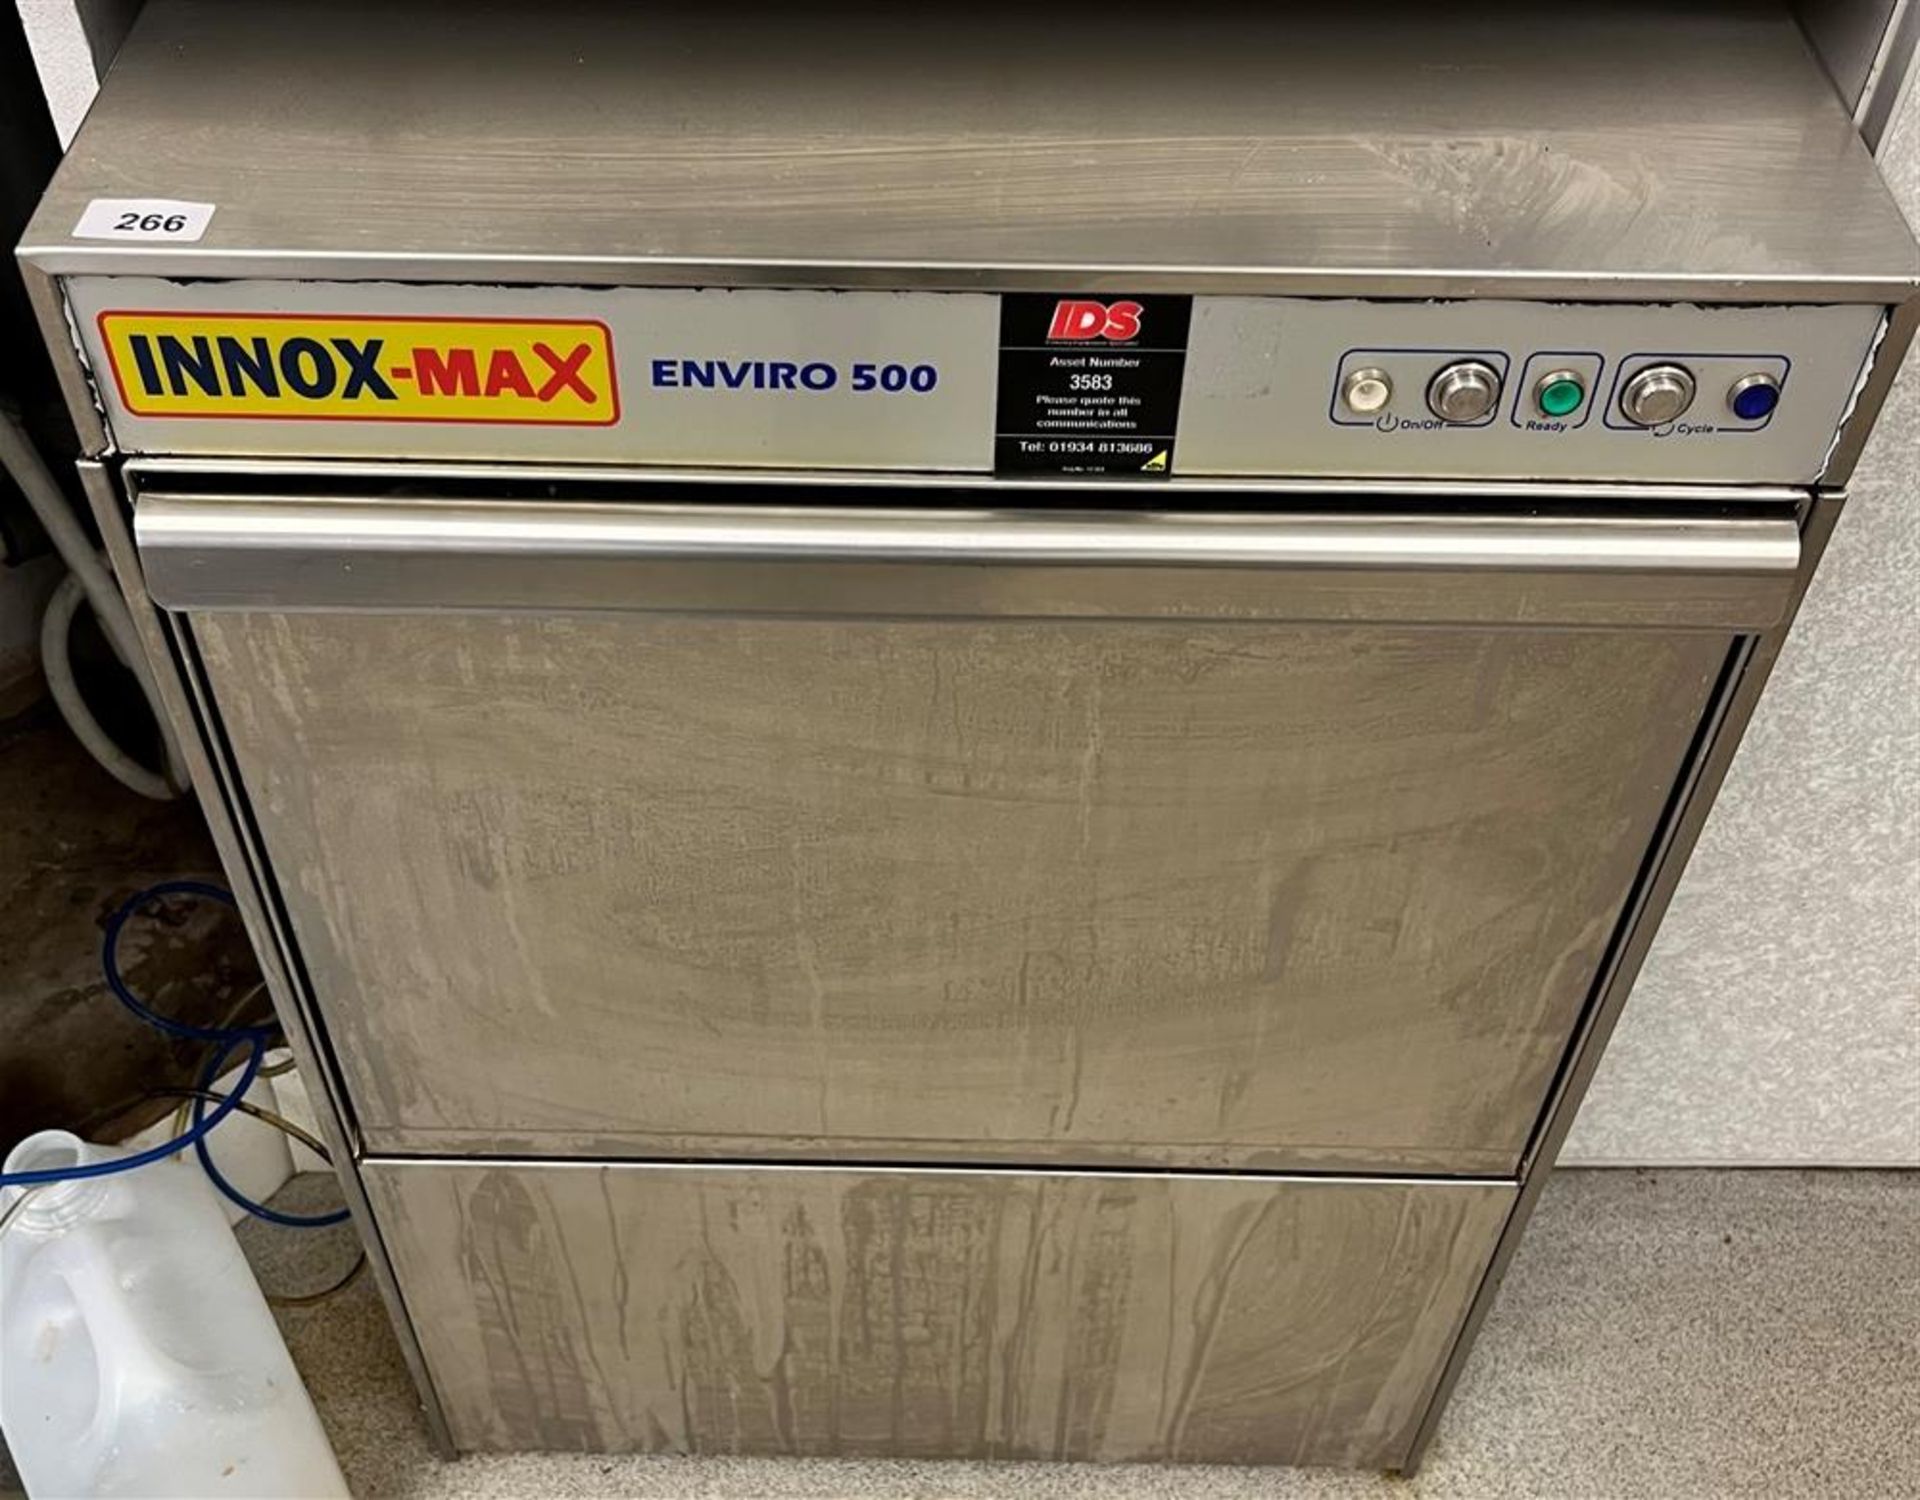 INNOX-MAX ENVIRO 500 DISHWASHER